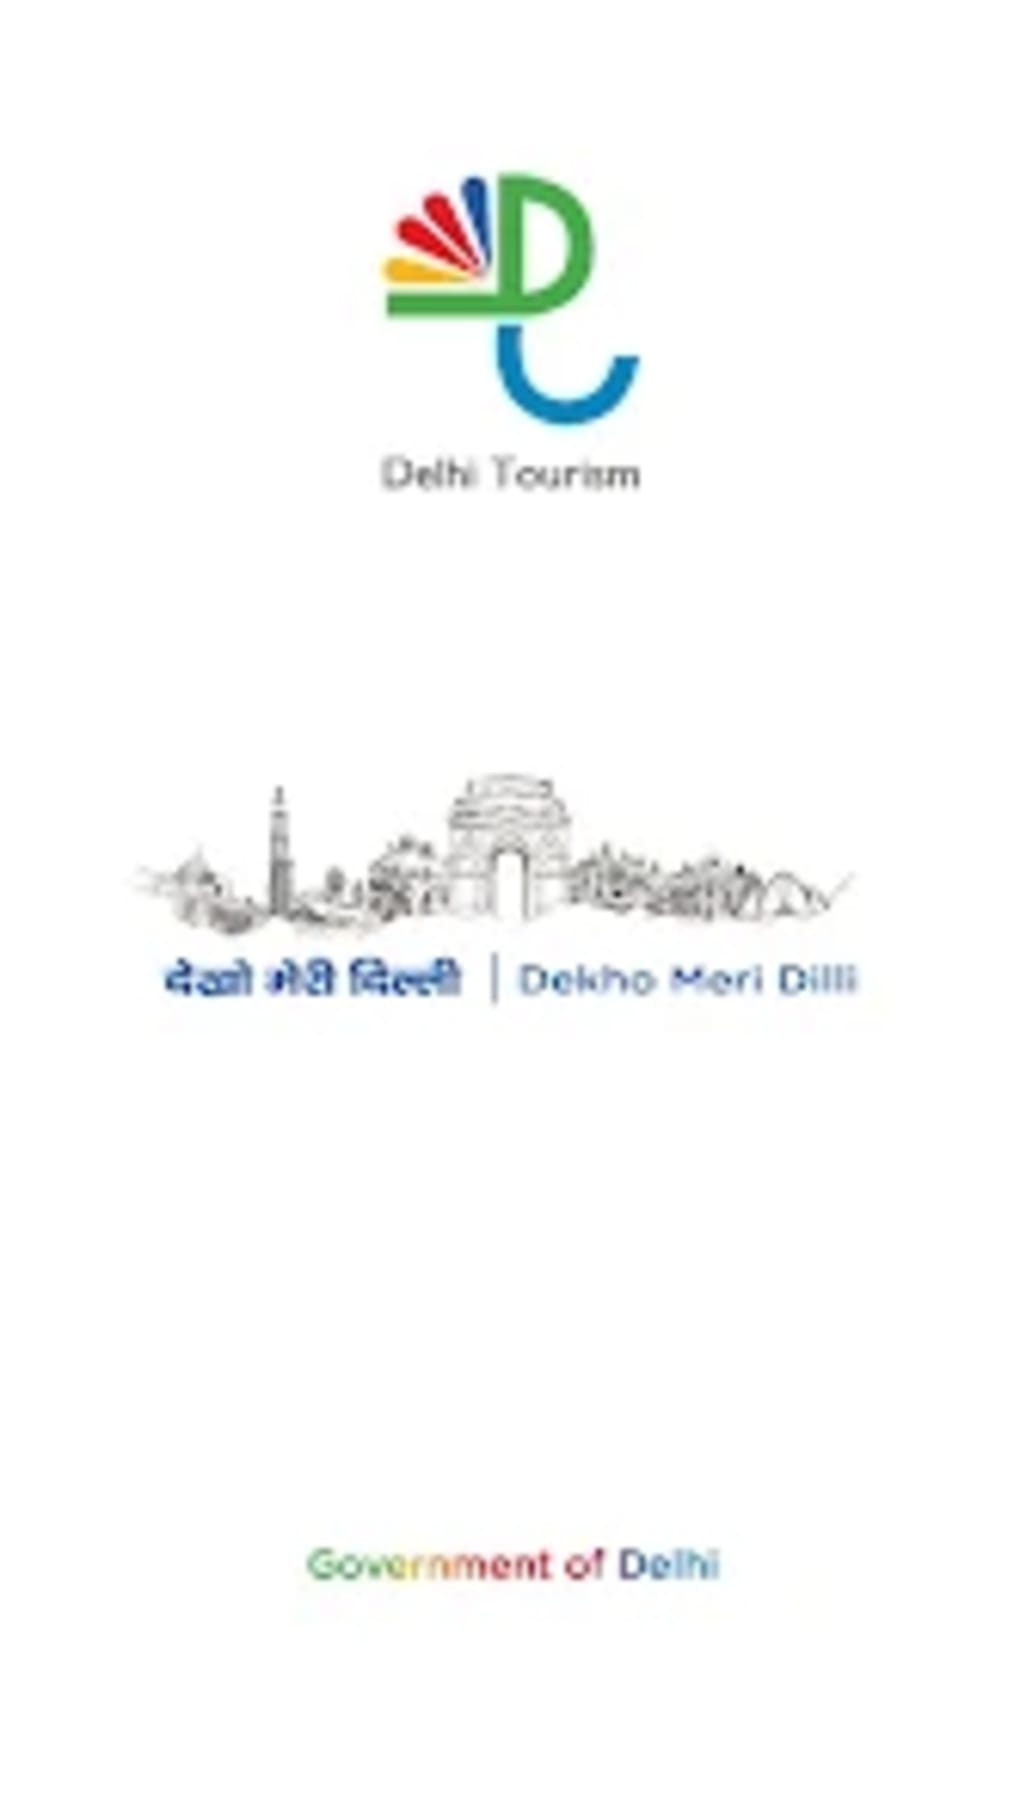 delhi tourism online ticket